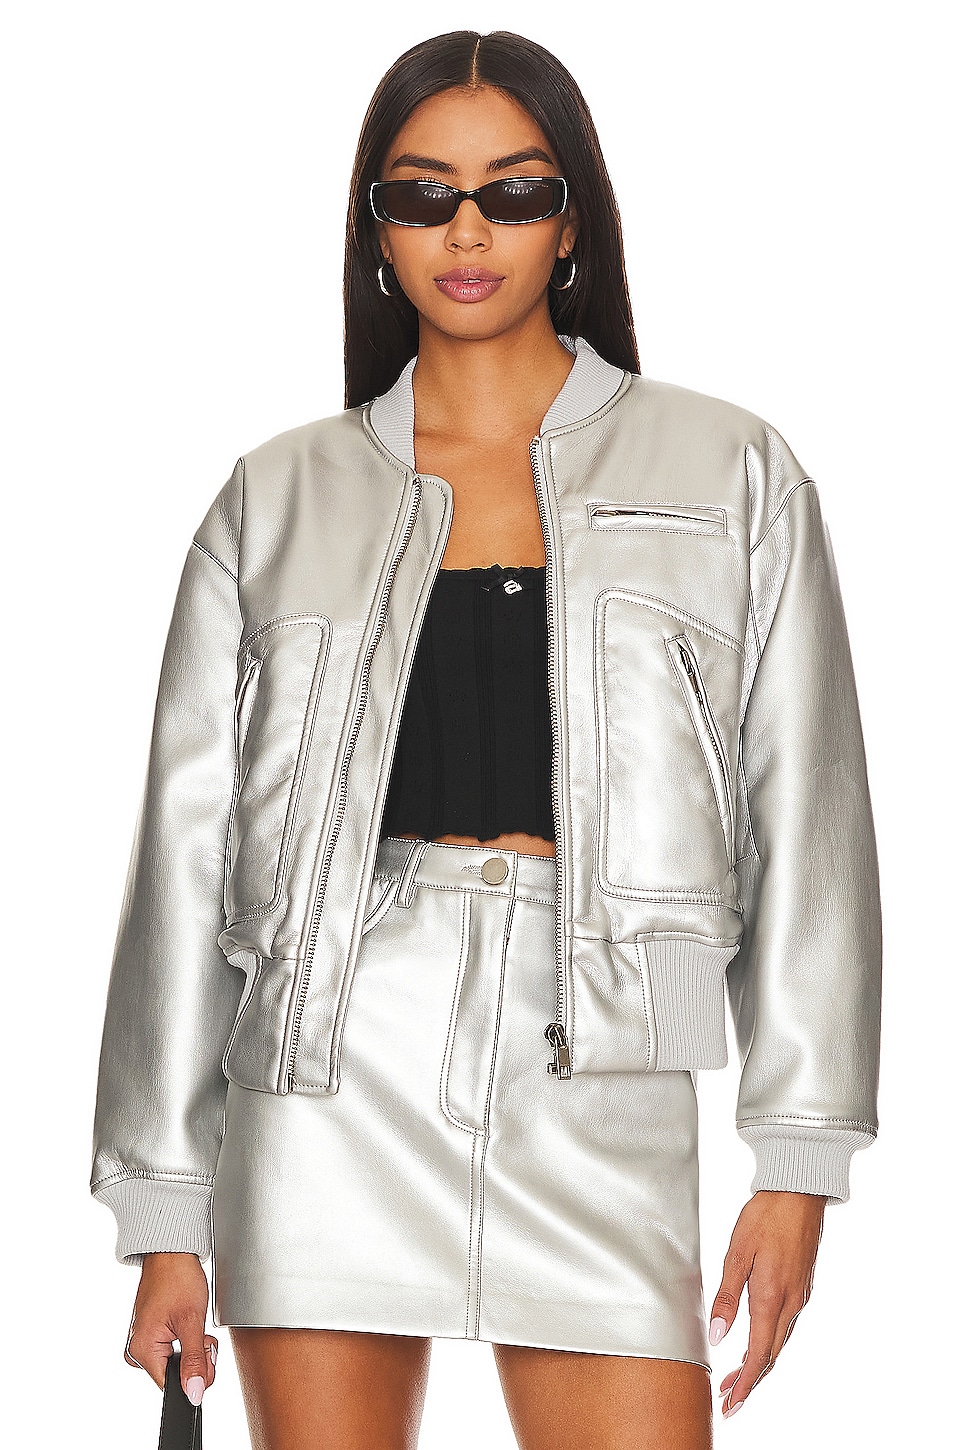 White Mark Women's Metallic Puffer Coat with Hoodie - Macy's